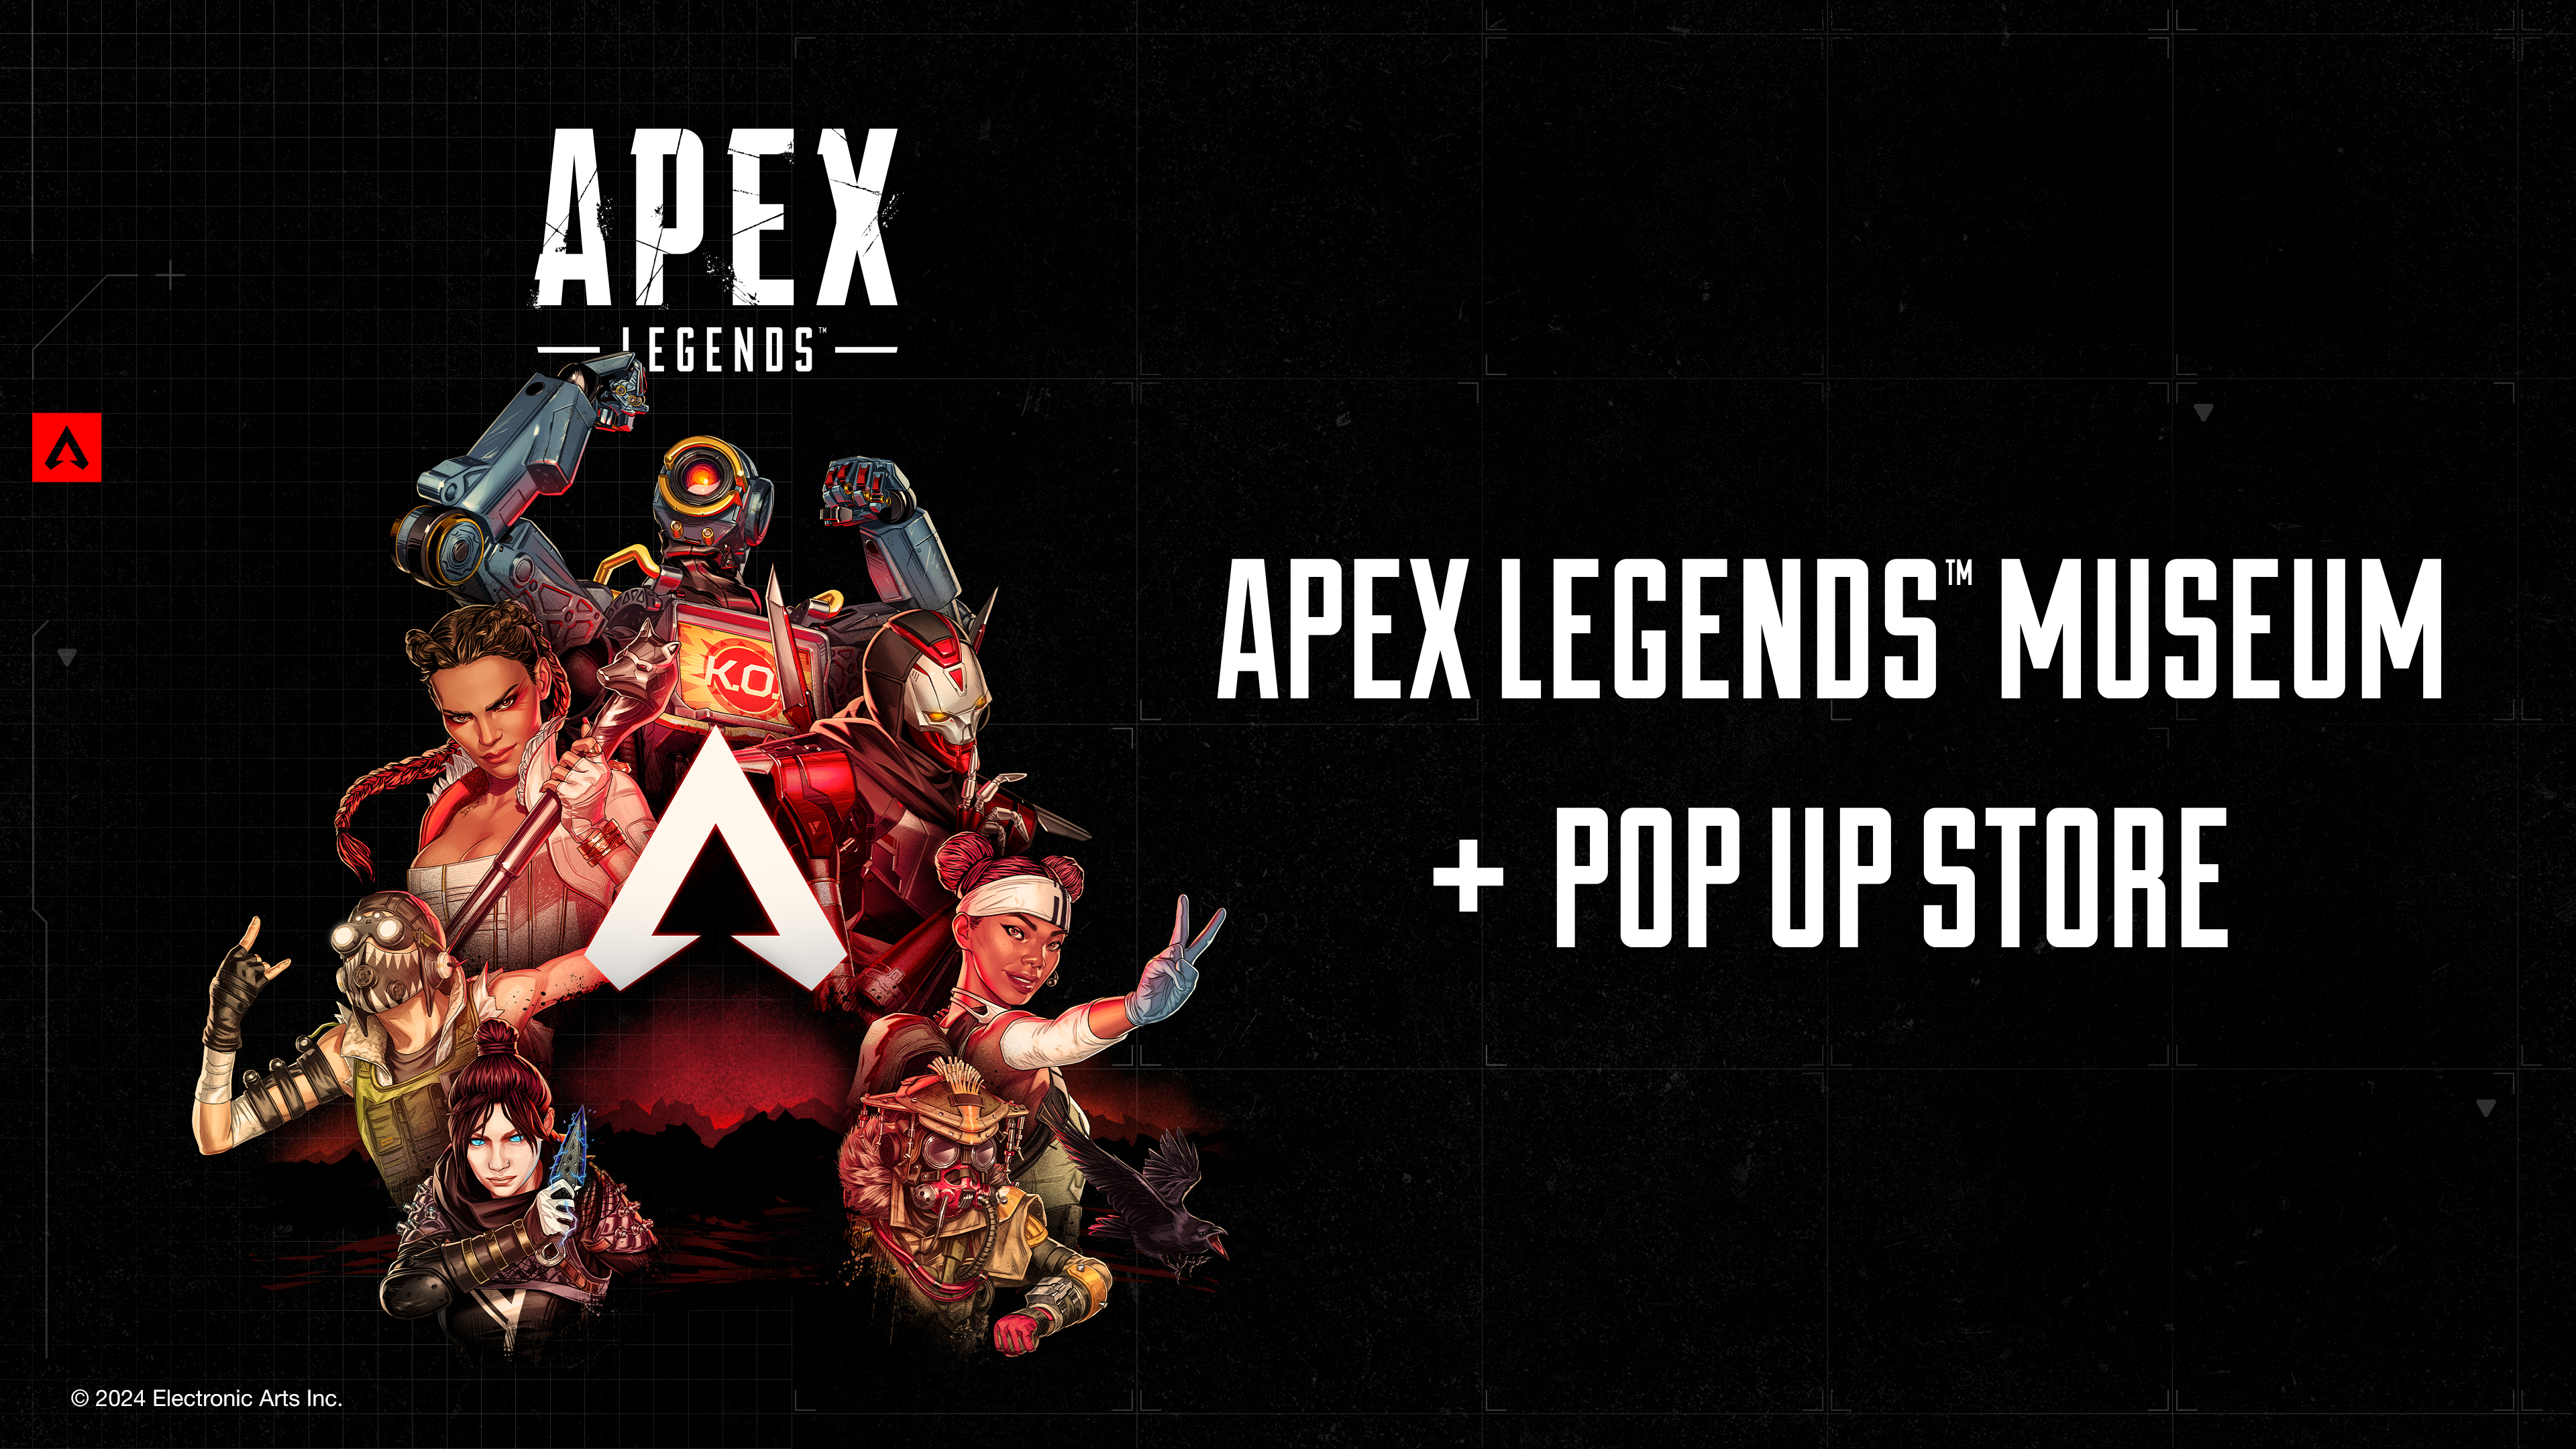 5周年を迎えた大人気FPS「Apex Legends™」、池袋パルコで開催されている企画展がすごすぎる